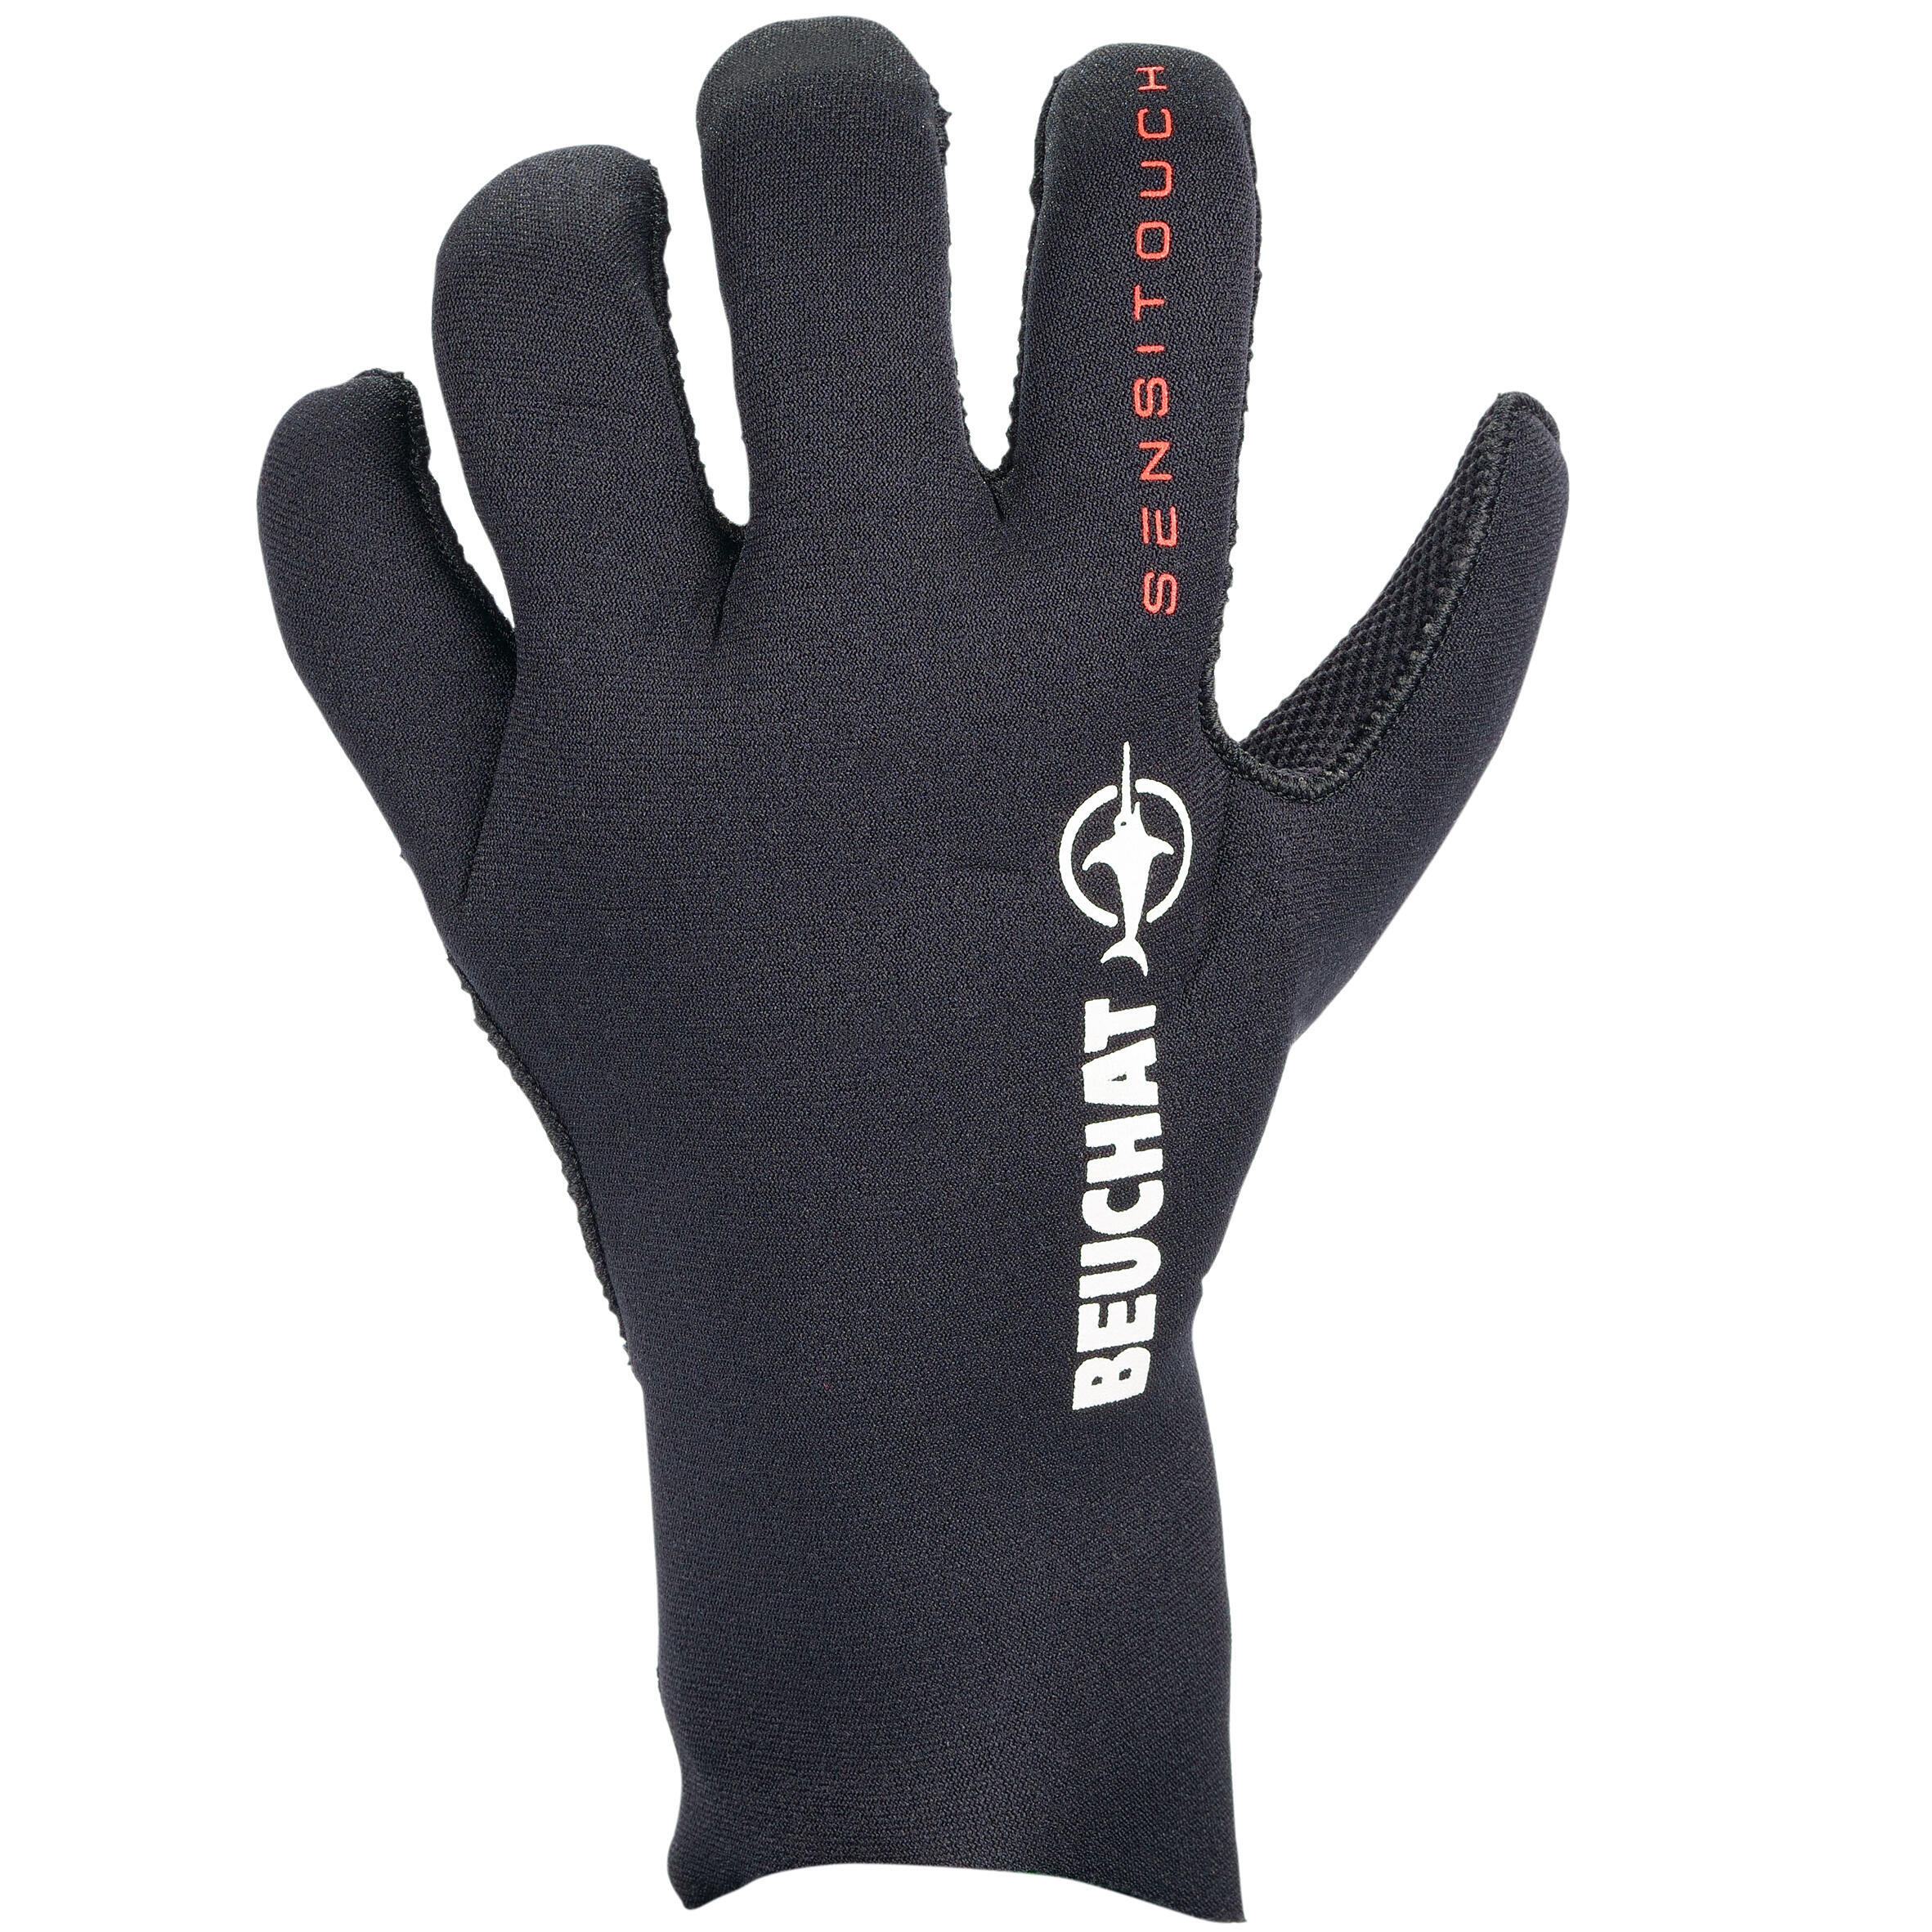 Перчатки для дайвинга Beuchat неопреновые 3 мм Sirocco Sport гладкие внутри перчатки для дайвинга 3 мм неопреновые нескользящие перчатки для дайвинга теплые перчатки для плавания перчатки для подводной охоты серф